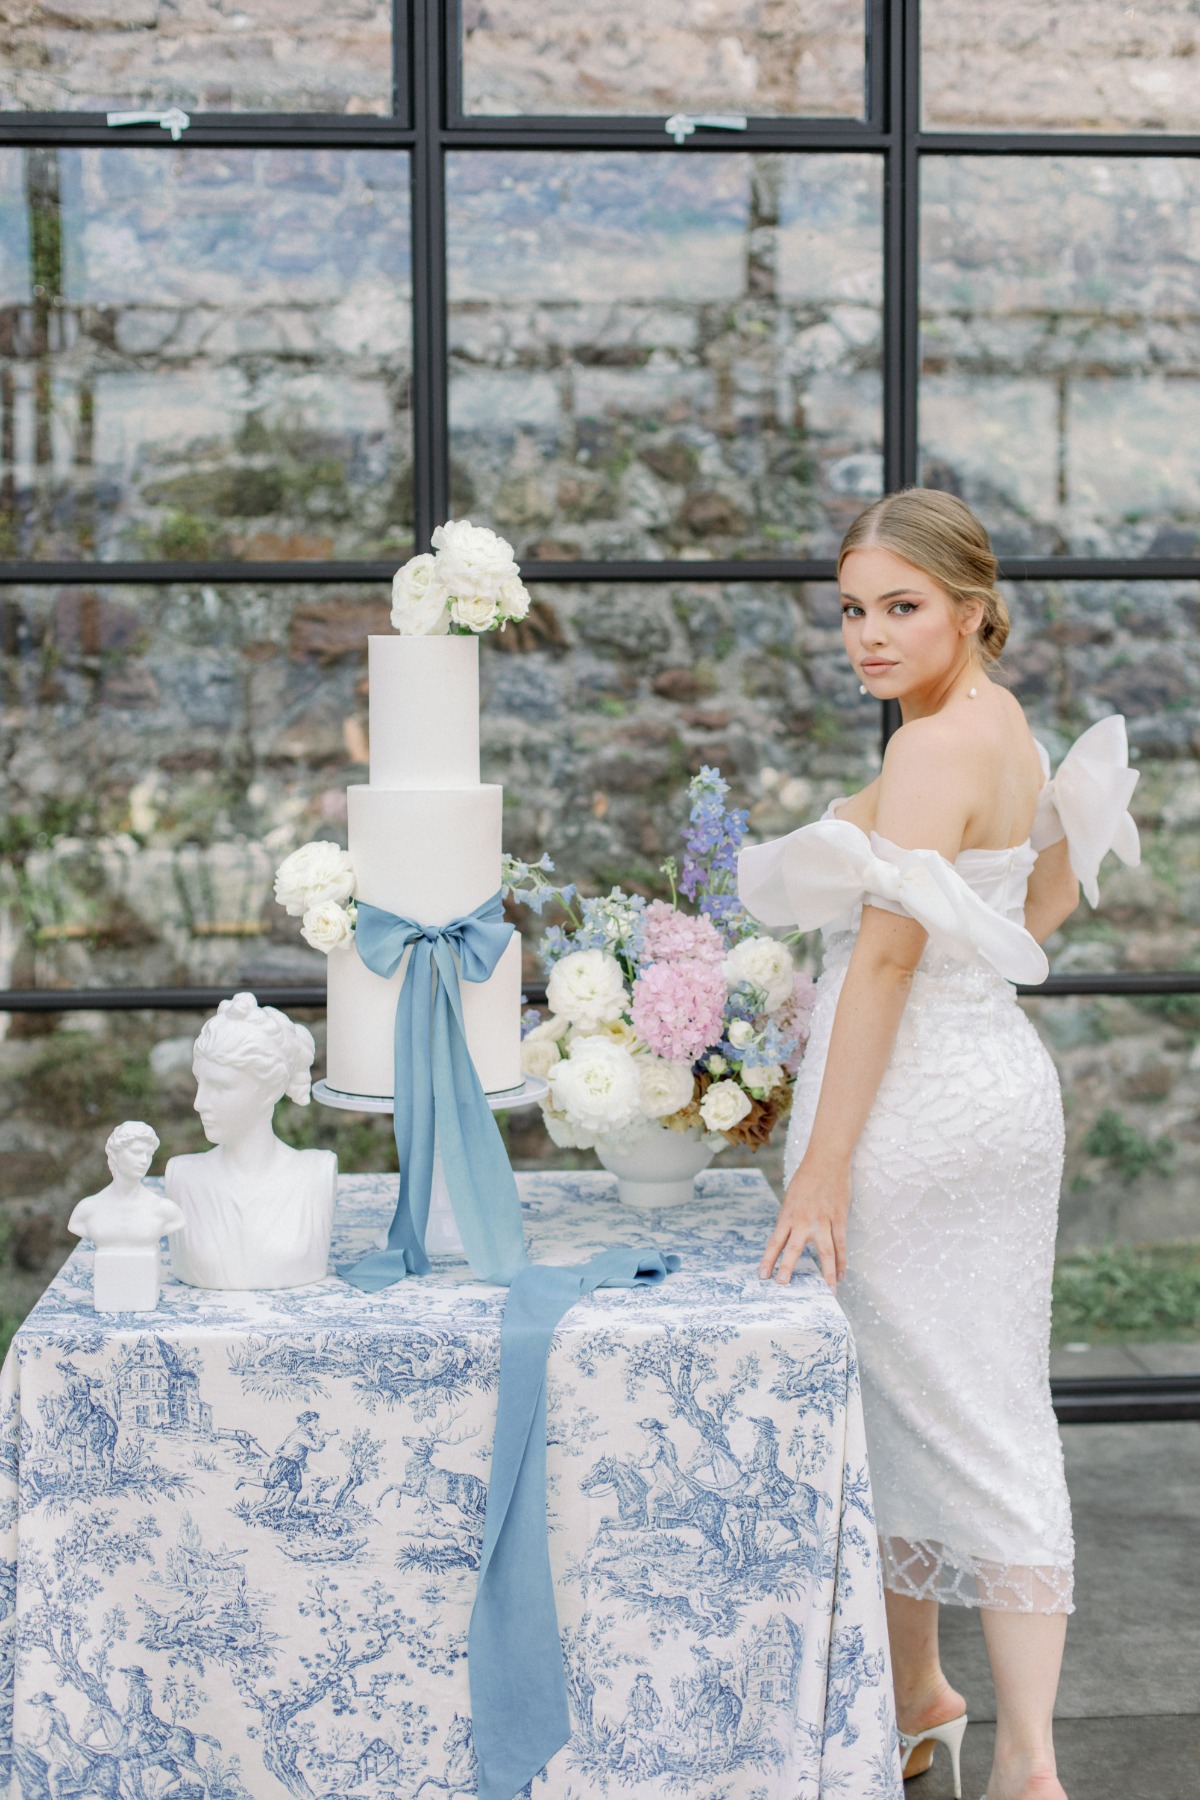 something blue wedding cake ideas